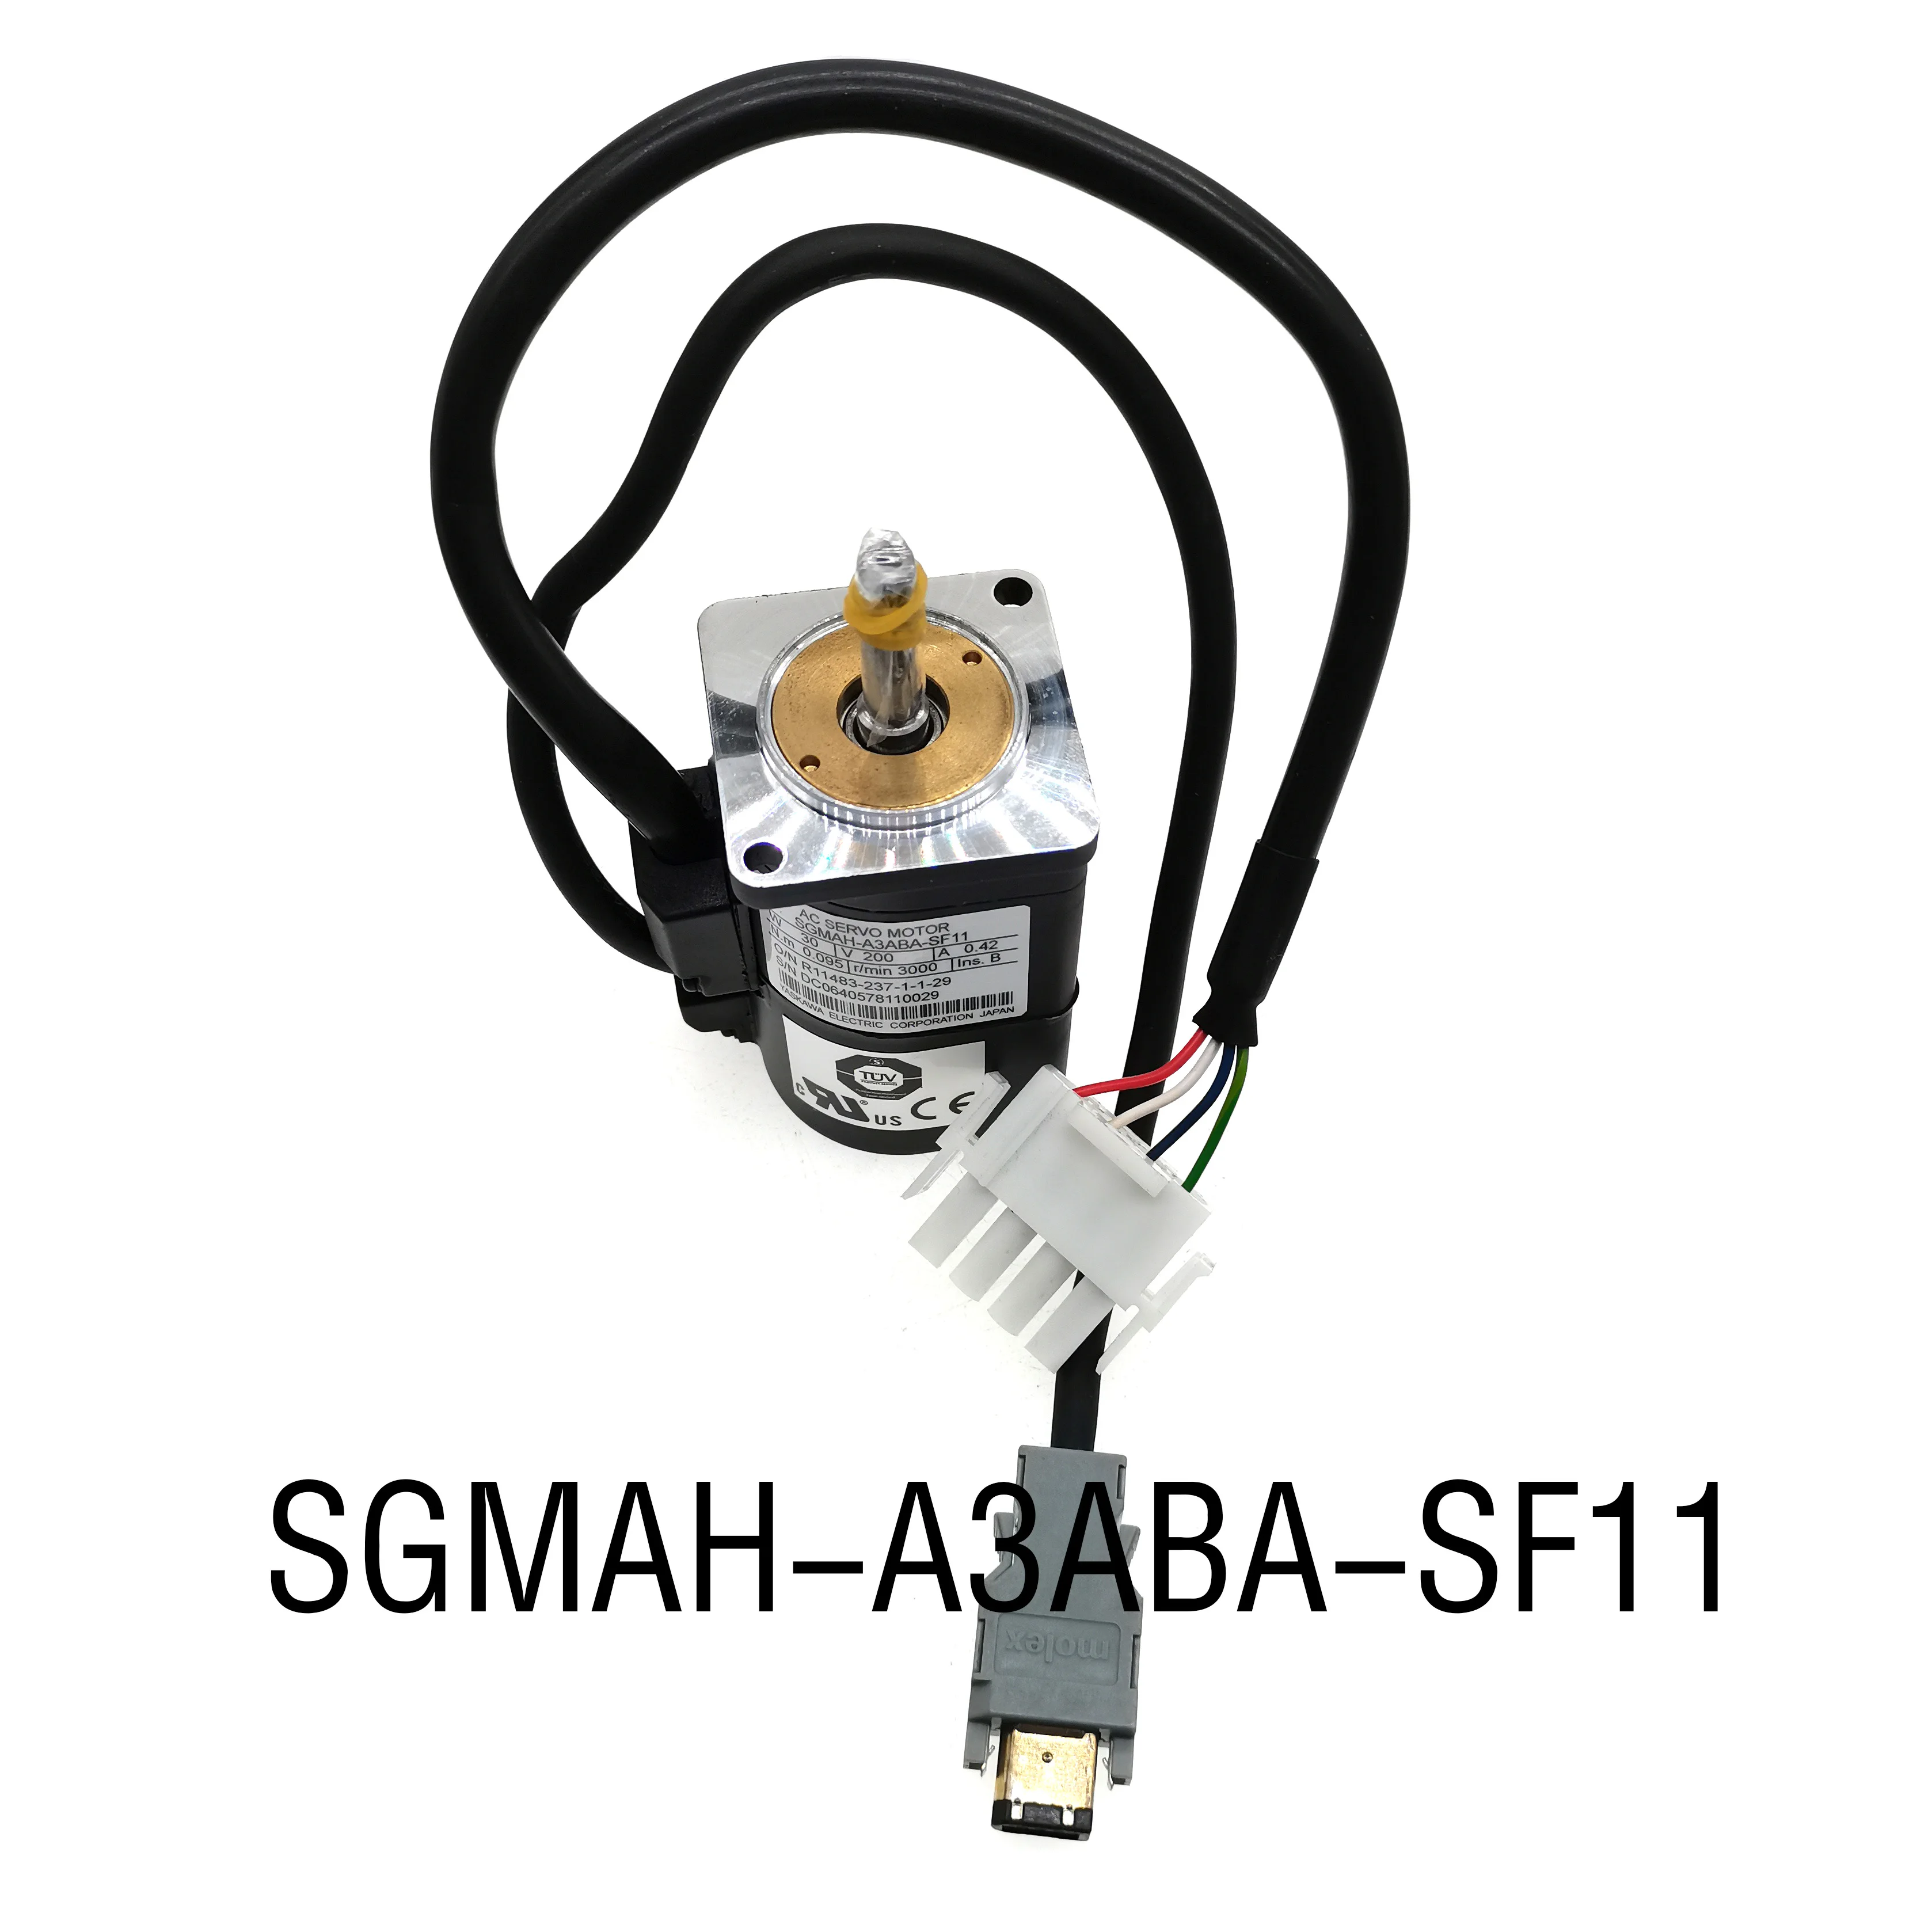 SGMAH-A3ABA-SF11 visiškai naujas originalus 30W servo variklių tiekimo, 1 metų garantija